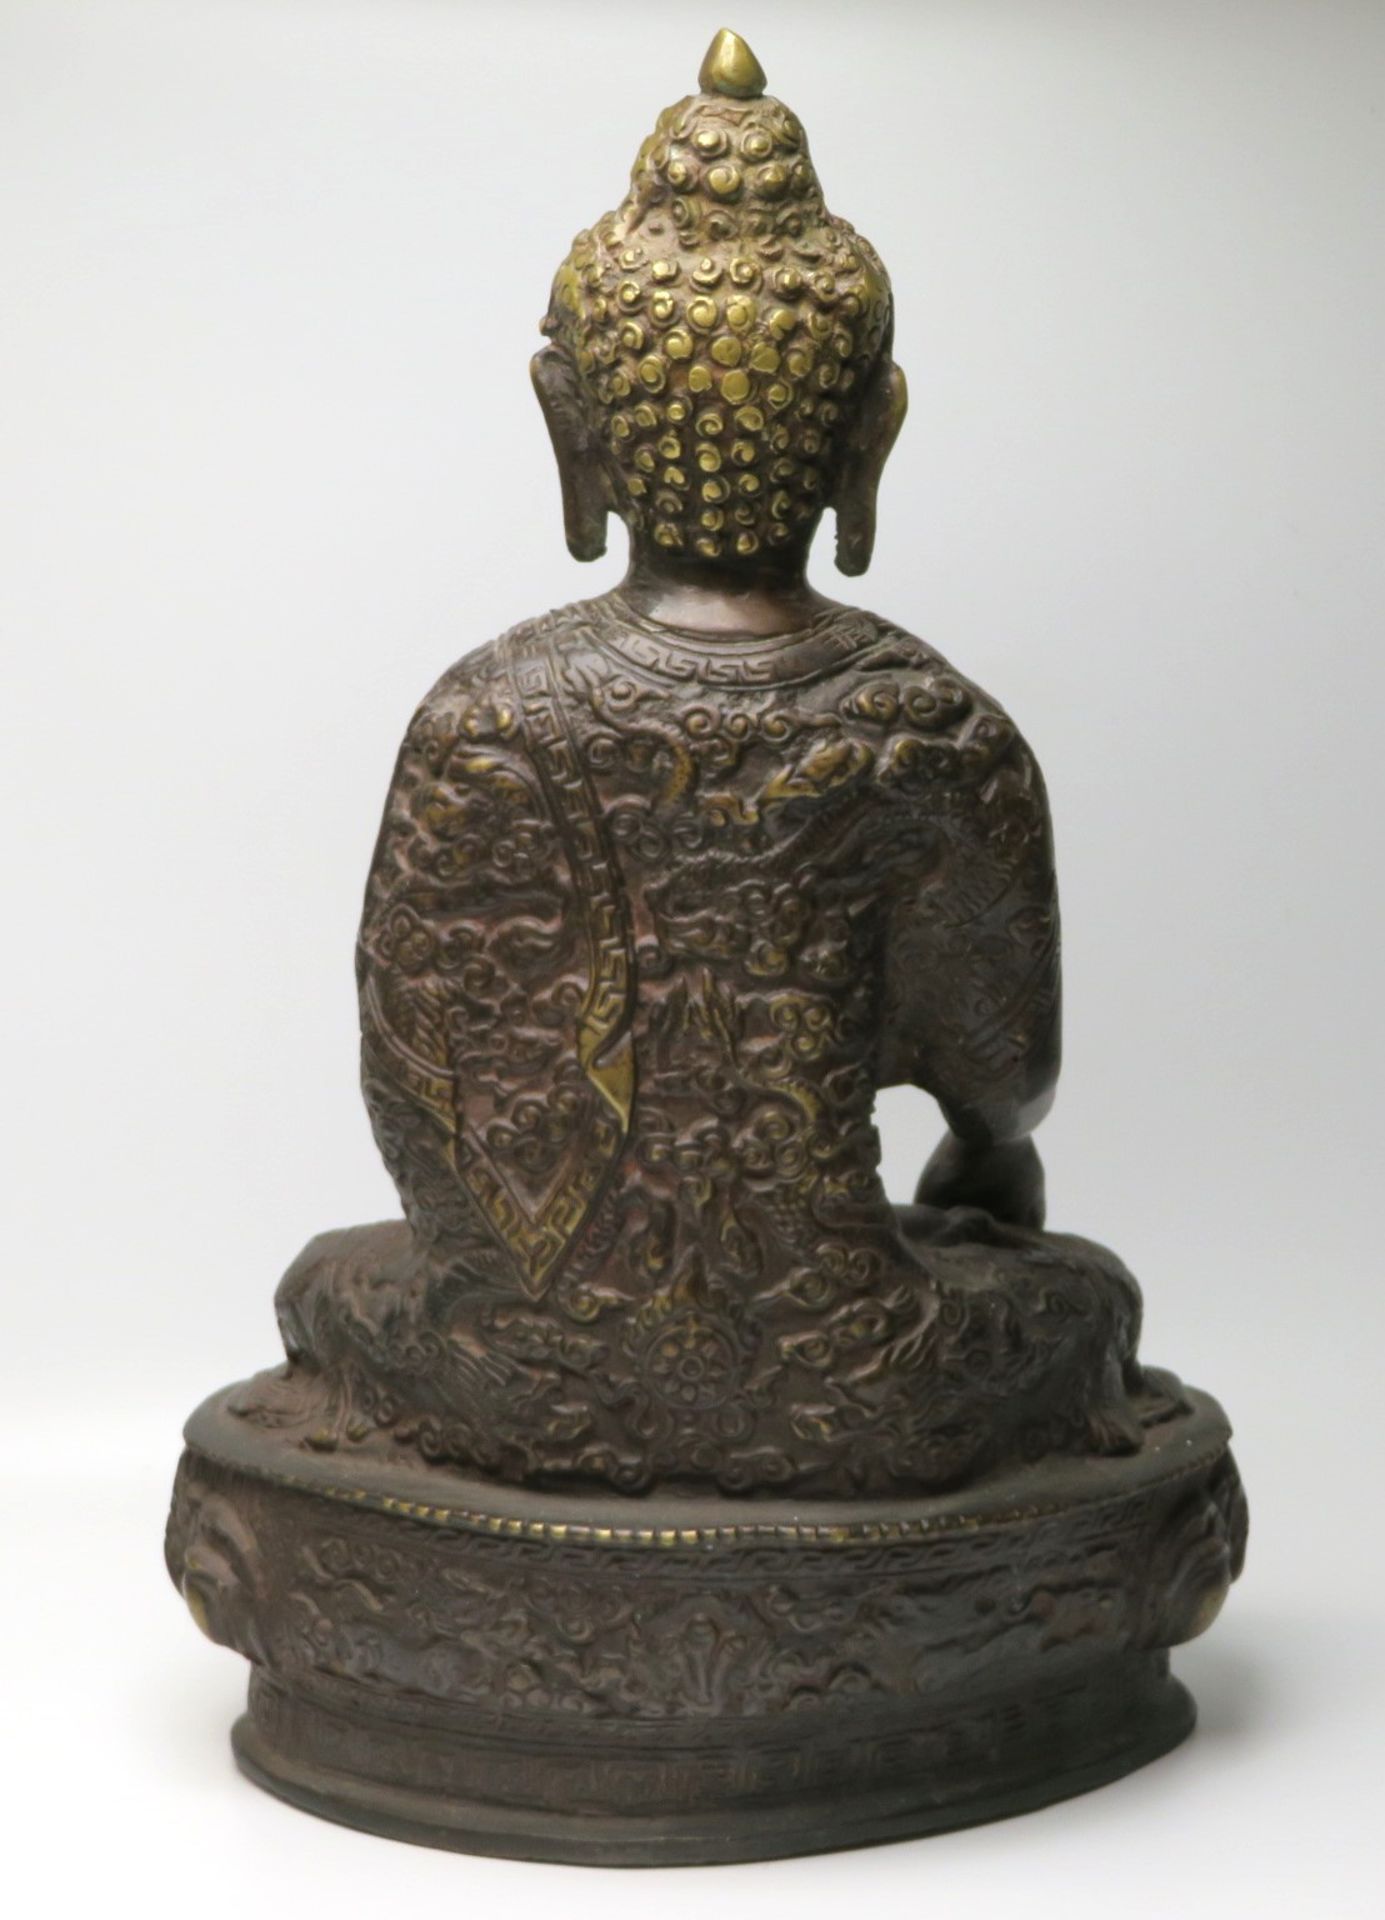 Sitzender Buddha, Südostasien, Bronze, Lotussockel, 27,5 x 17,5 x 11,5 cm. - Bild 2 aus 2